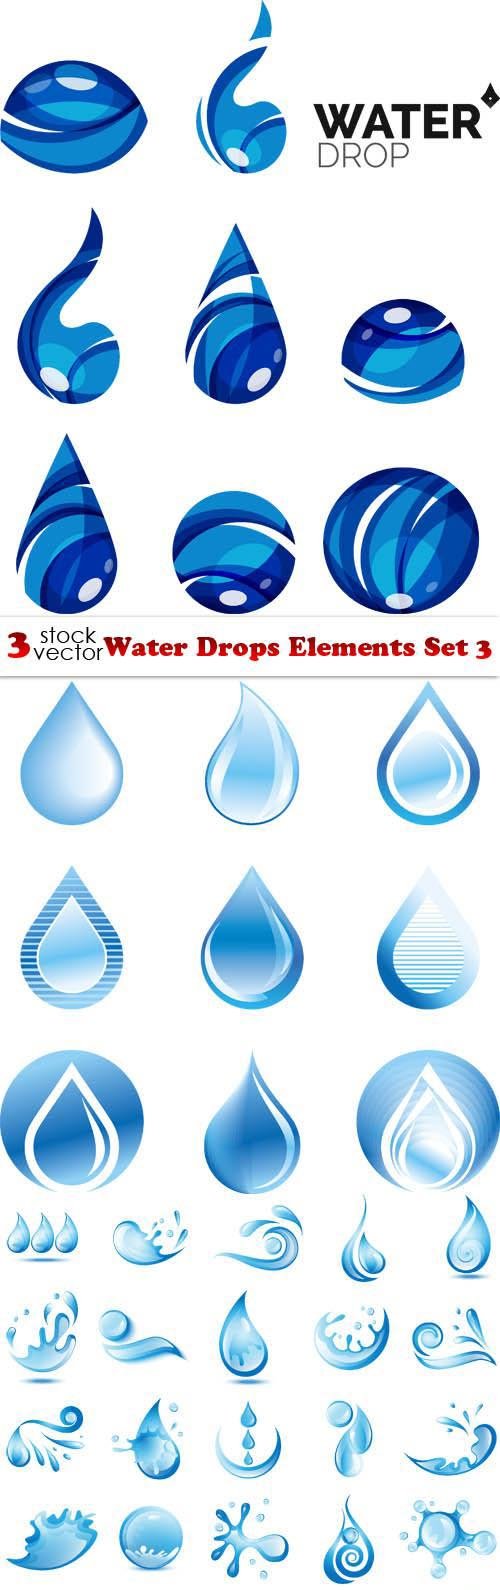 Vectors - Water Drops Elements Set 3